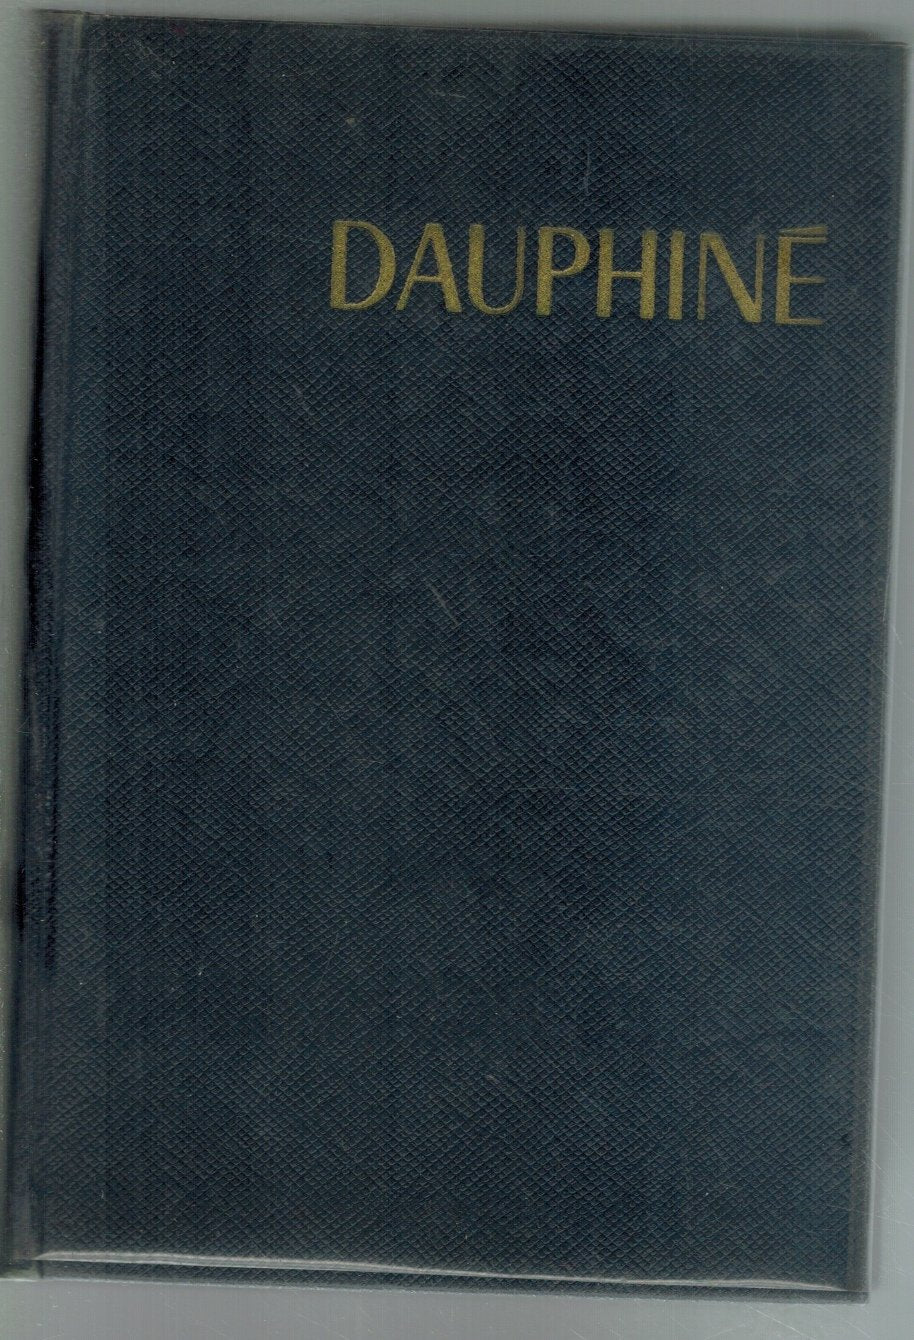 GUIDE BLEU DAUPHINÉCN  by Hachette